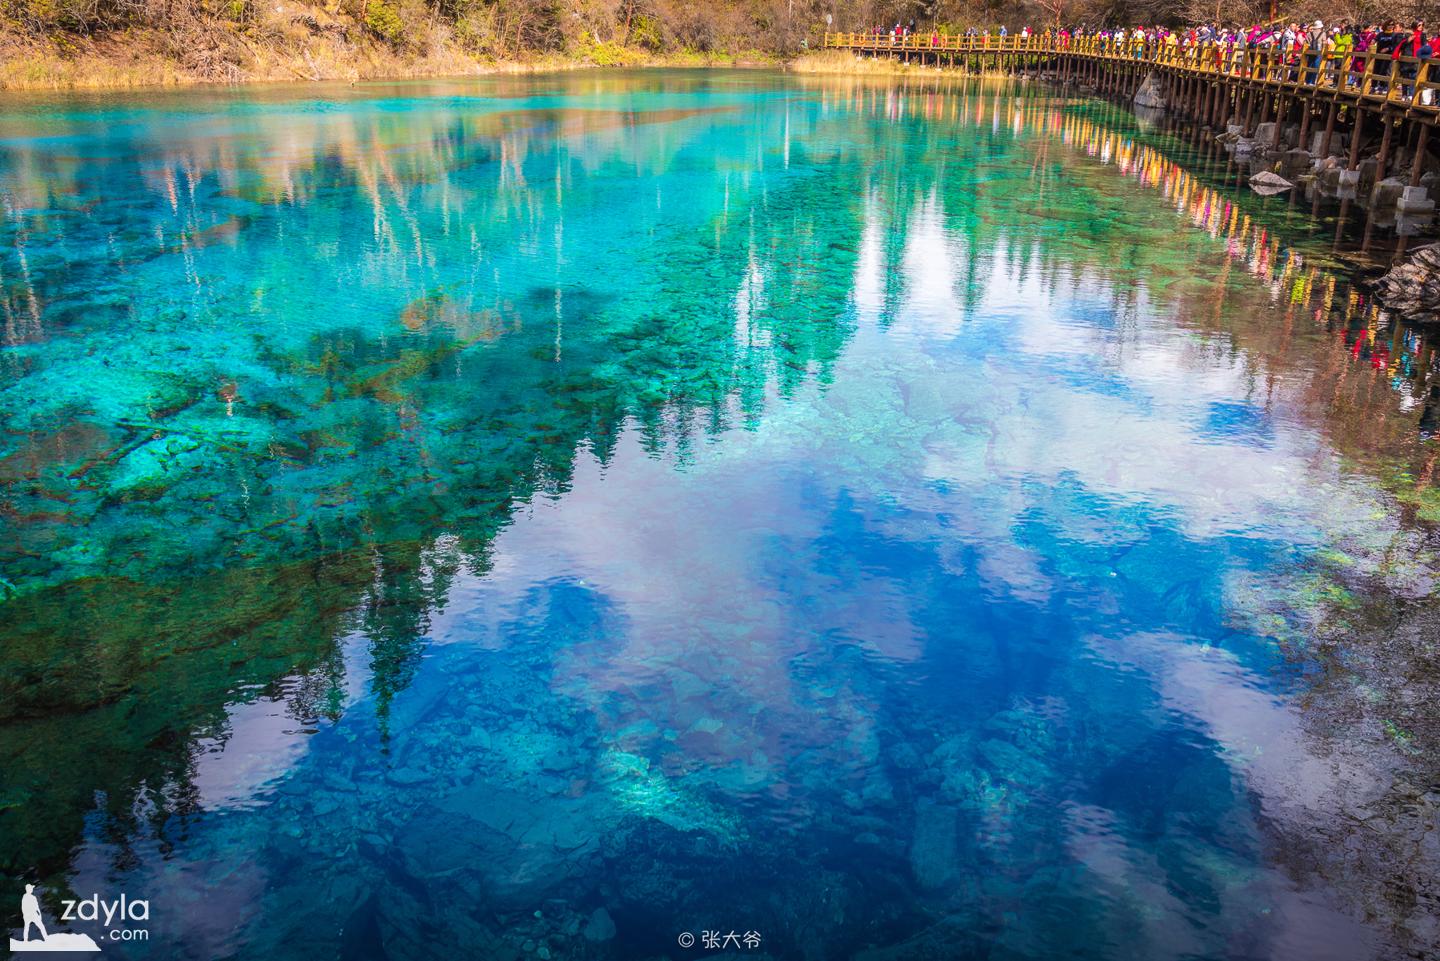 Jiuzhai Valley · Colorful pool